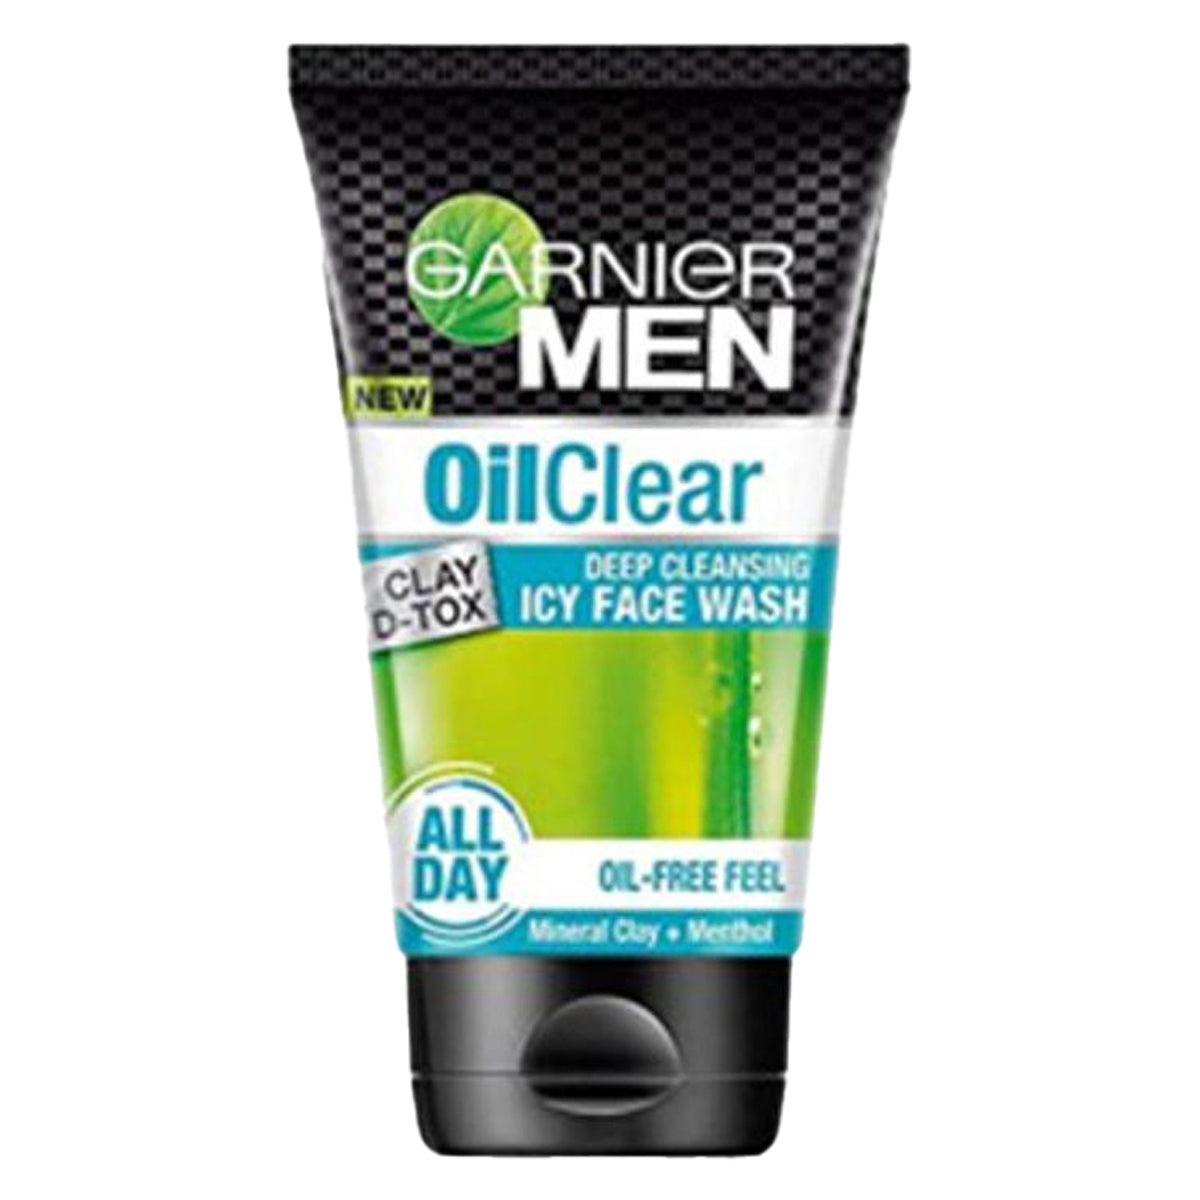 Garnier Men Oil Clear Face Wash 100 ml